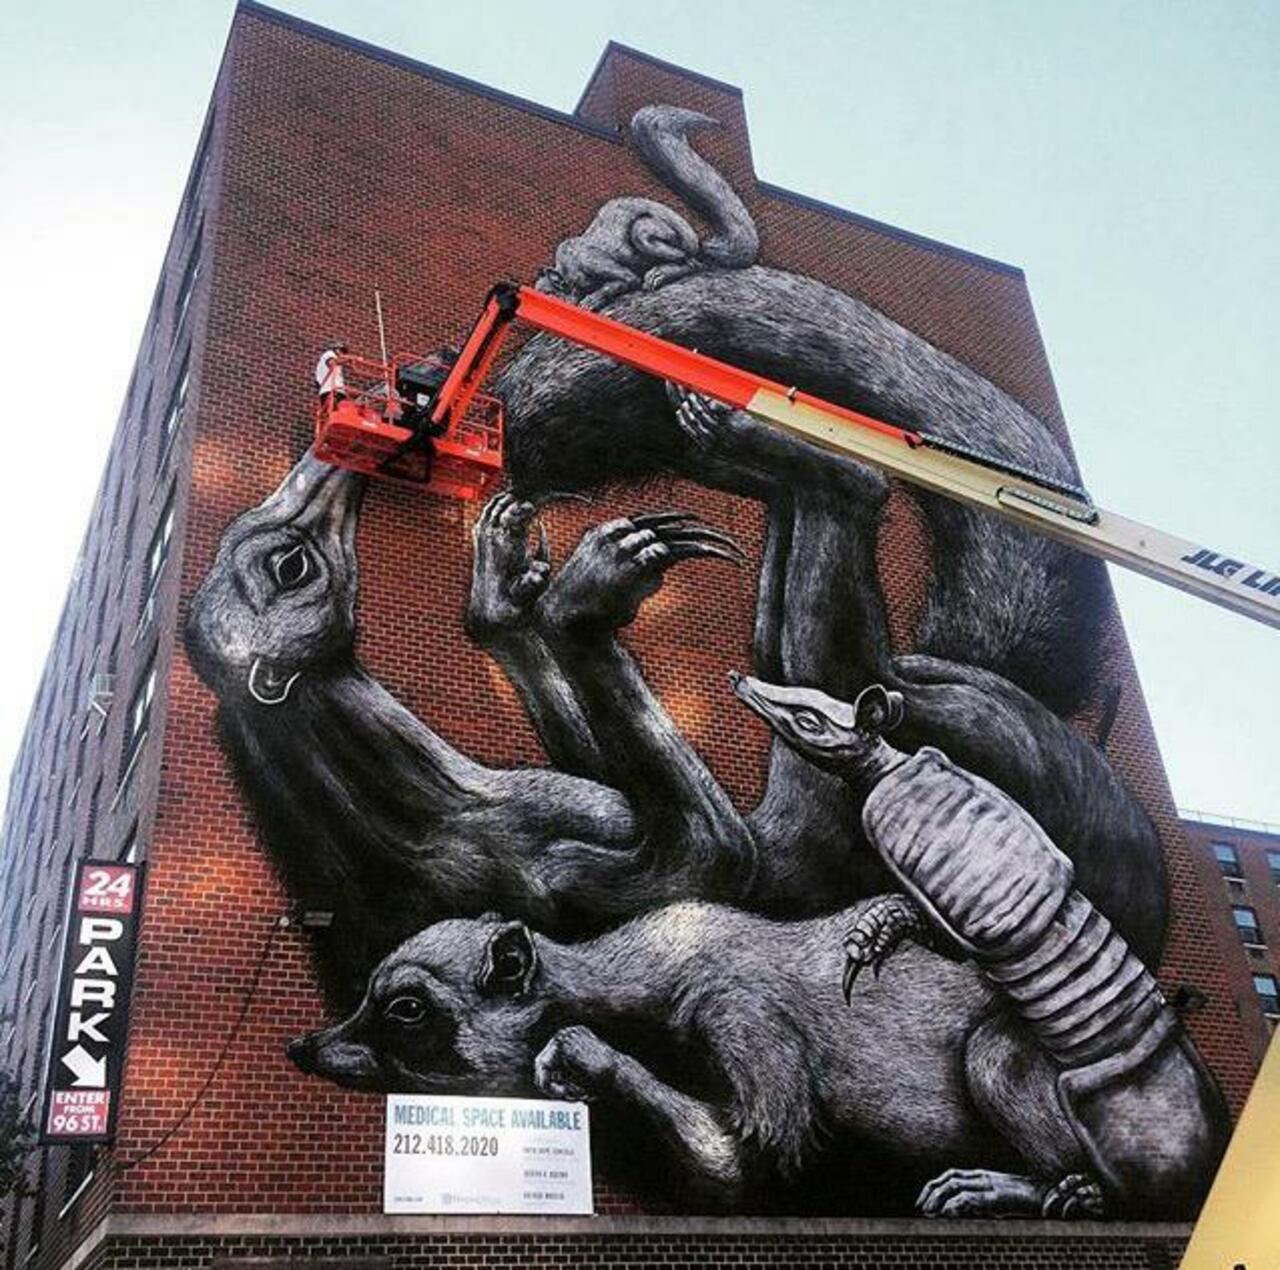 Street Art in progress by ROA in NYC

#art #graffiti #mural #streetart http://t.co/RIw6r5y36k